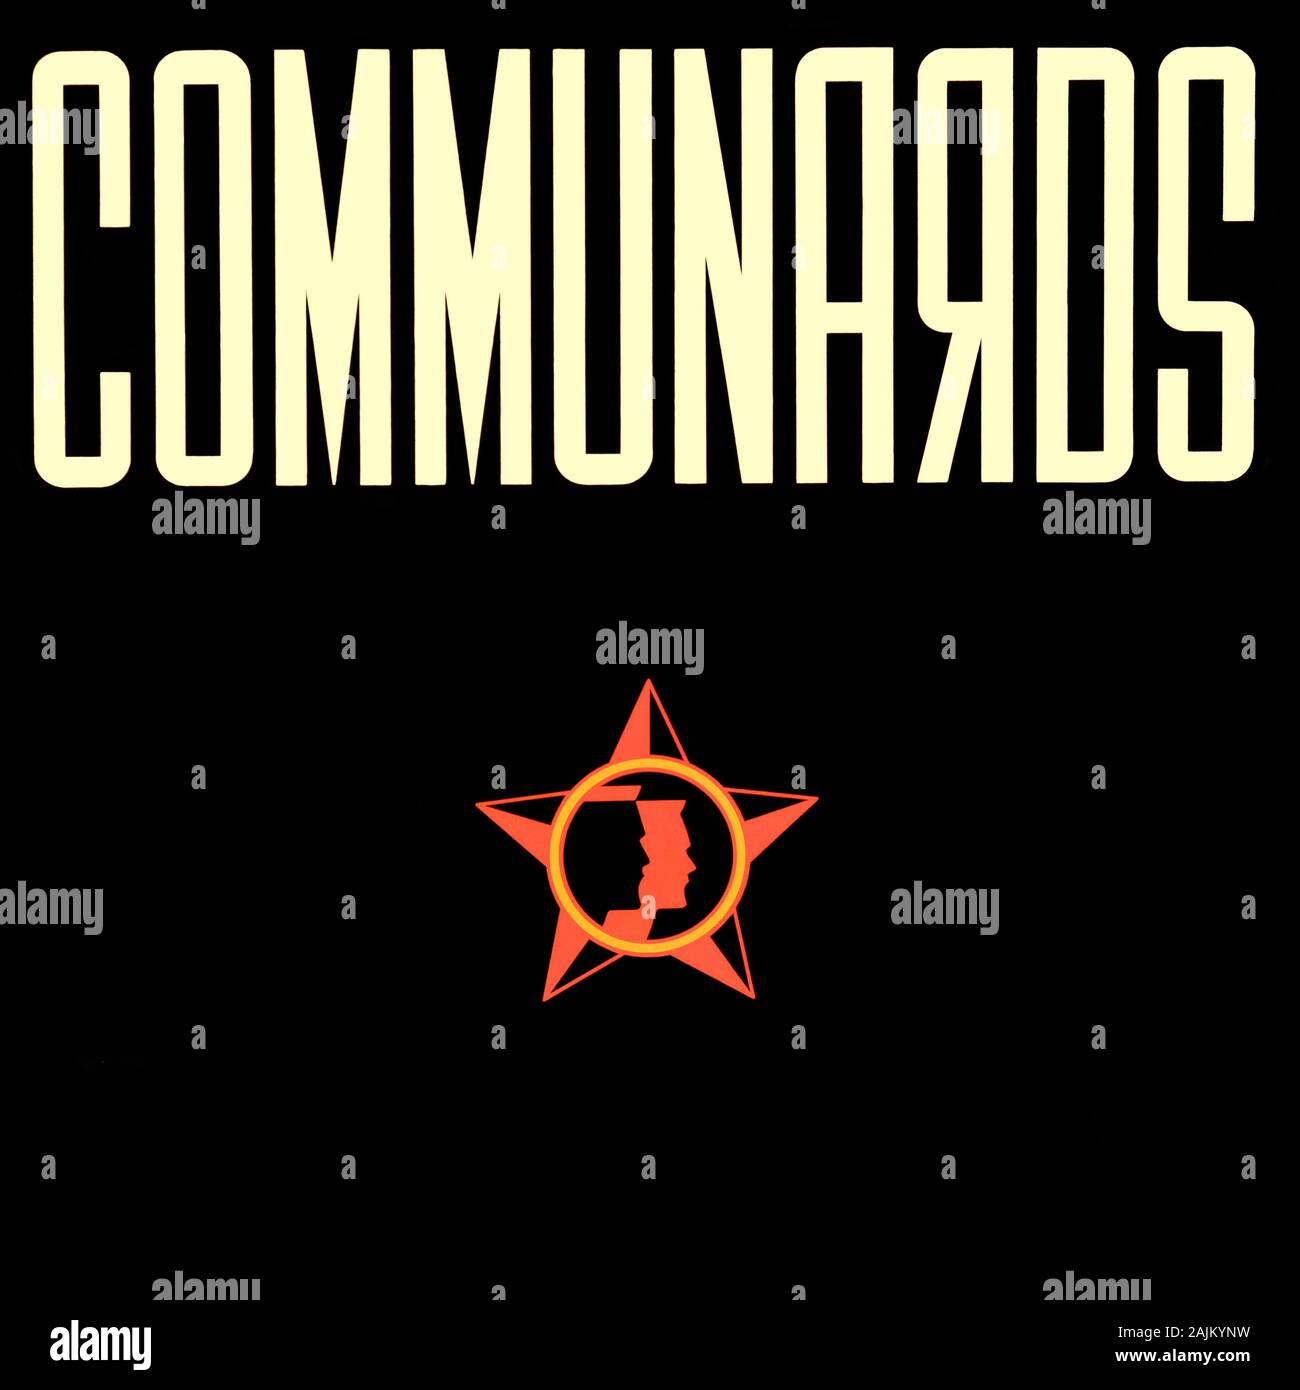 Communards - couverture originale de l'album vinyle - communards - 1986 Banque D'Images